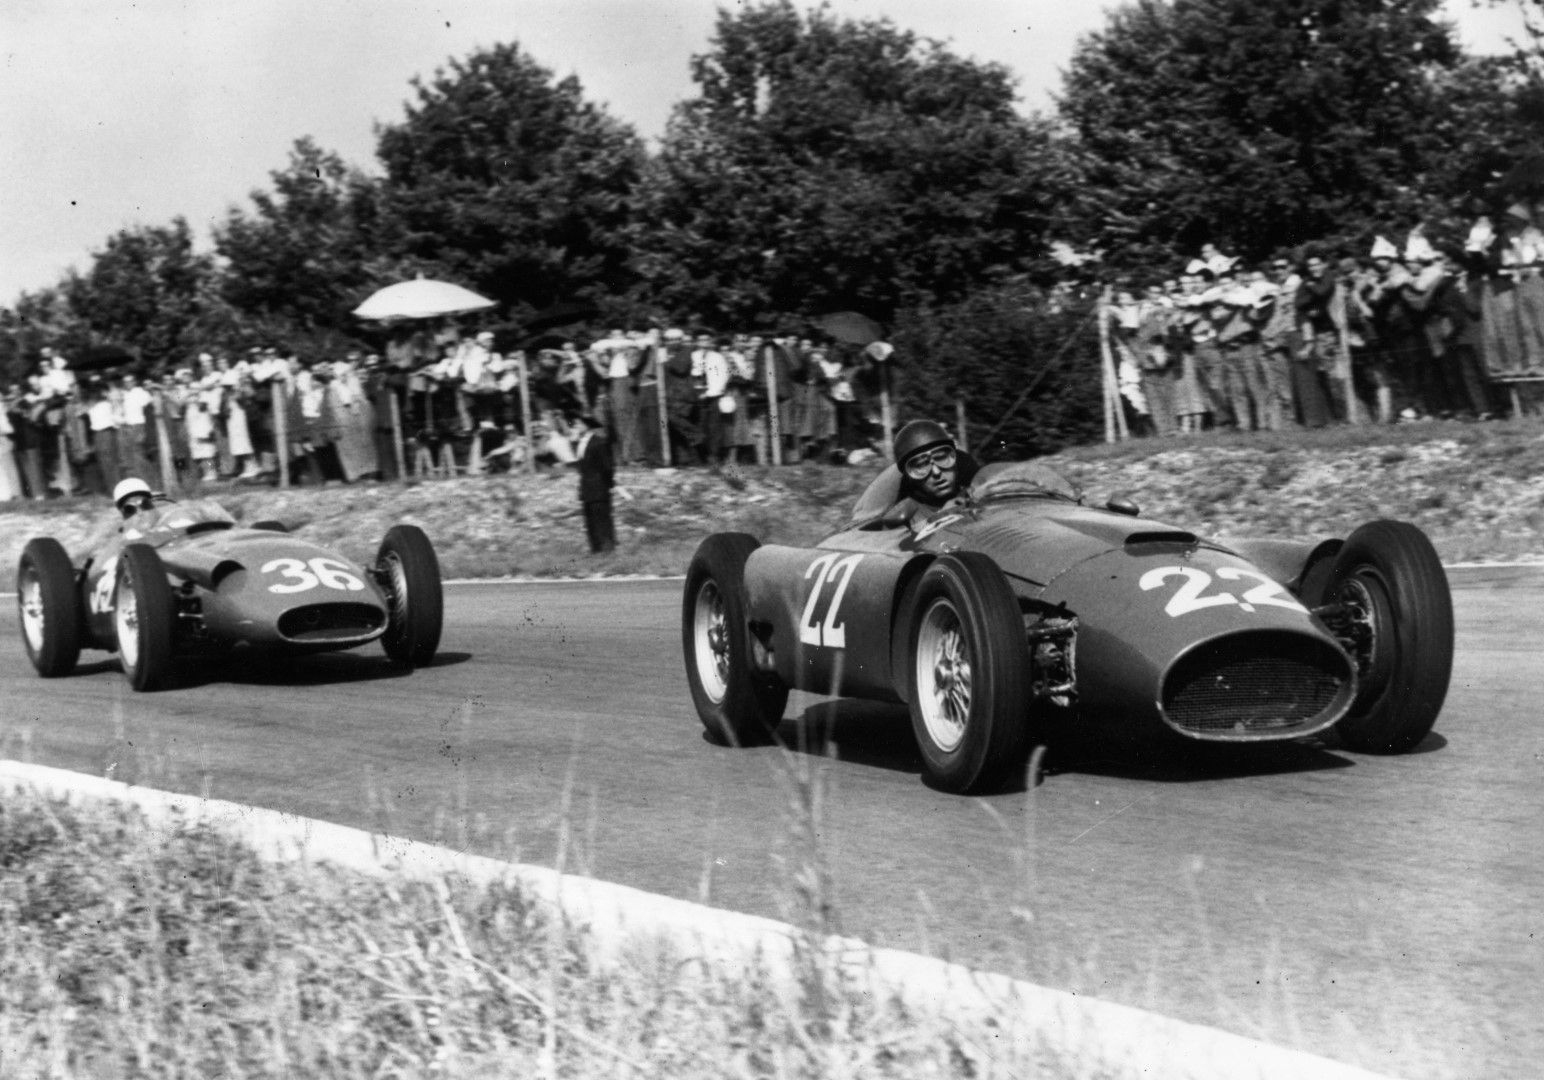  3 септември 1956 г. Световният шампион Хуан Мануел Фанджо с "Ферари" води на Стърлинг Мос, който е с "Мазерати" по време на Гран при на Италия през 1956-а. Англичанинът спечели състезанието, но шампион отново бе аржентинецът.